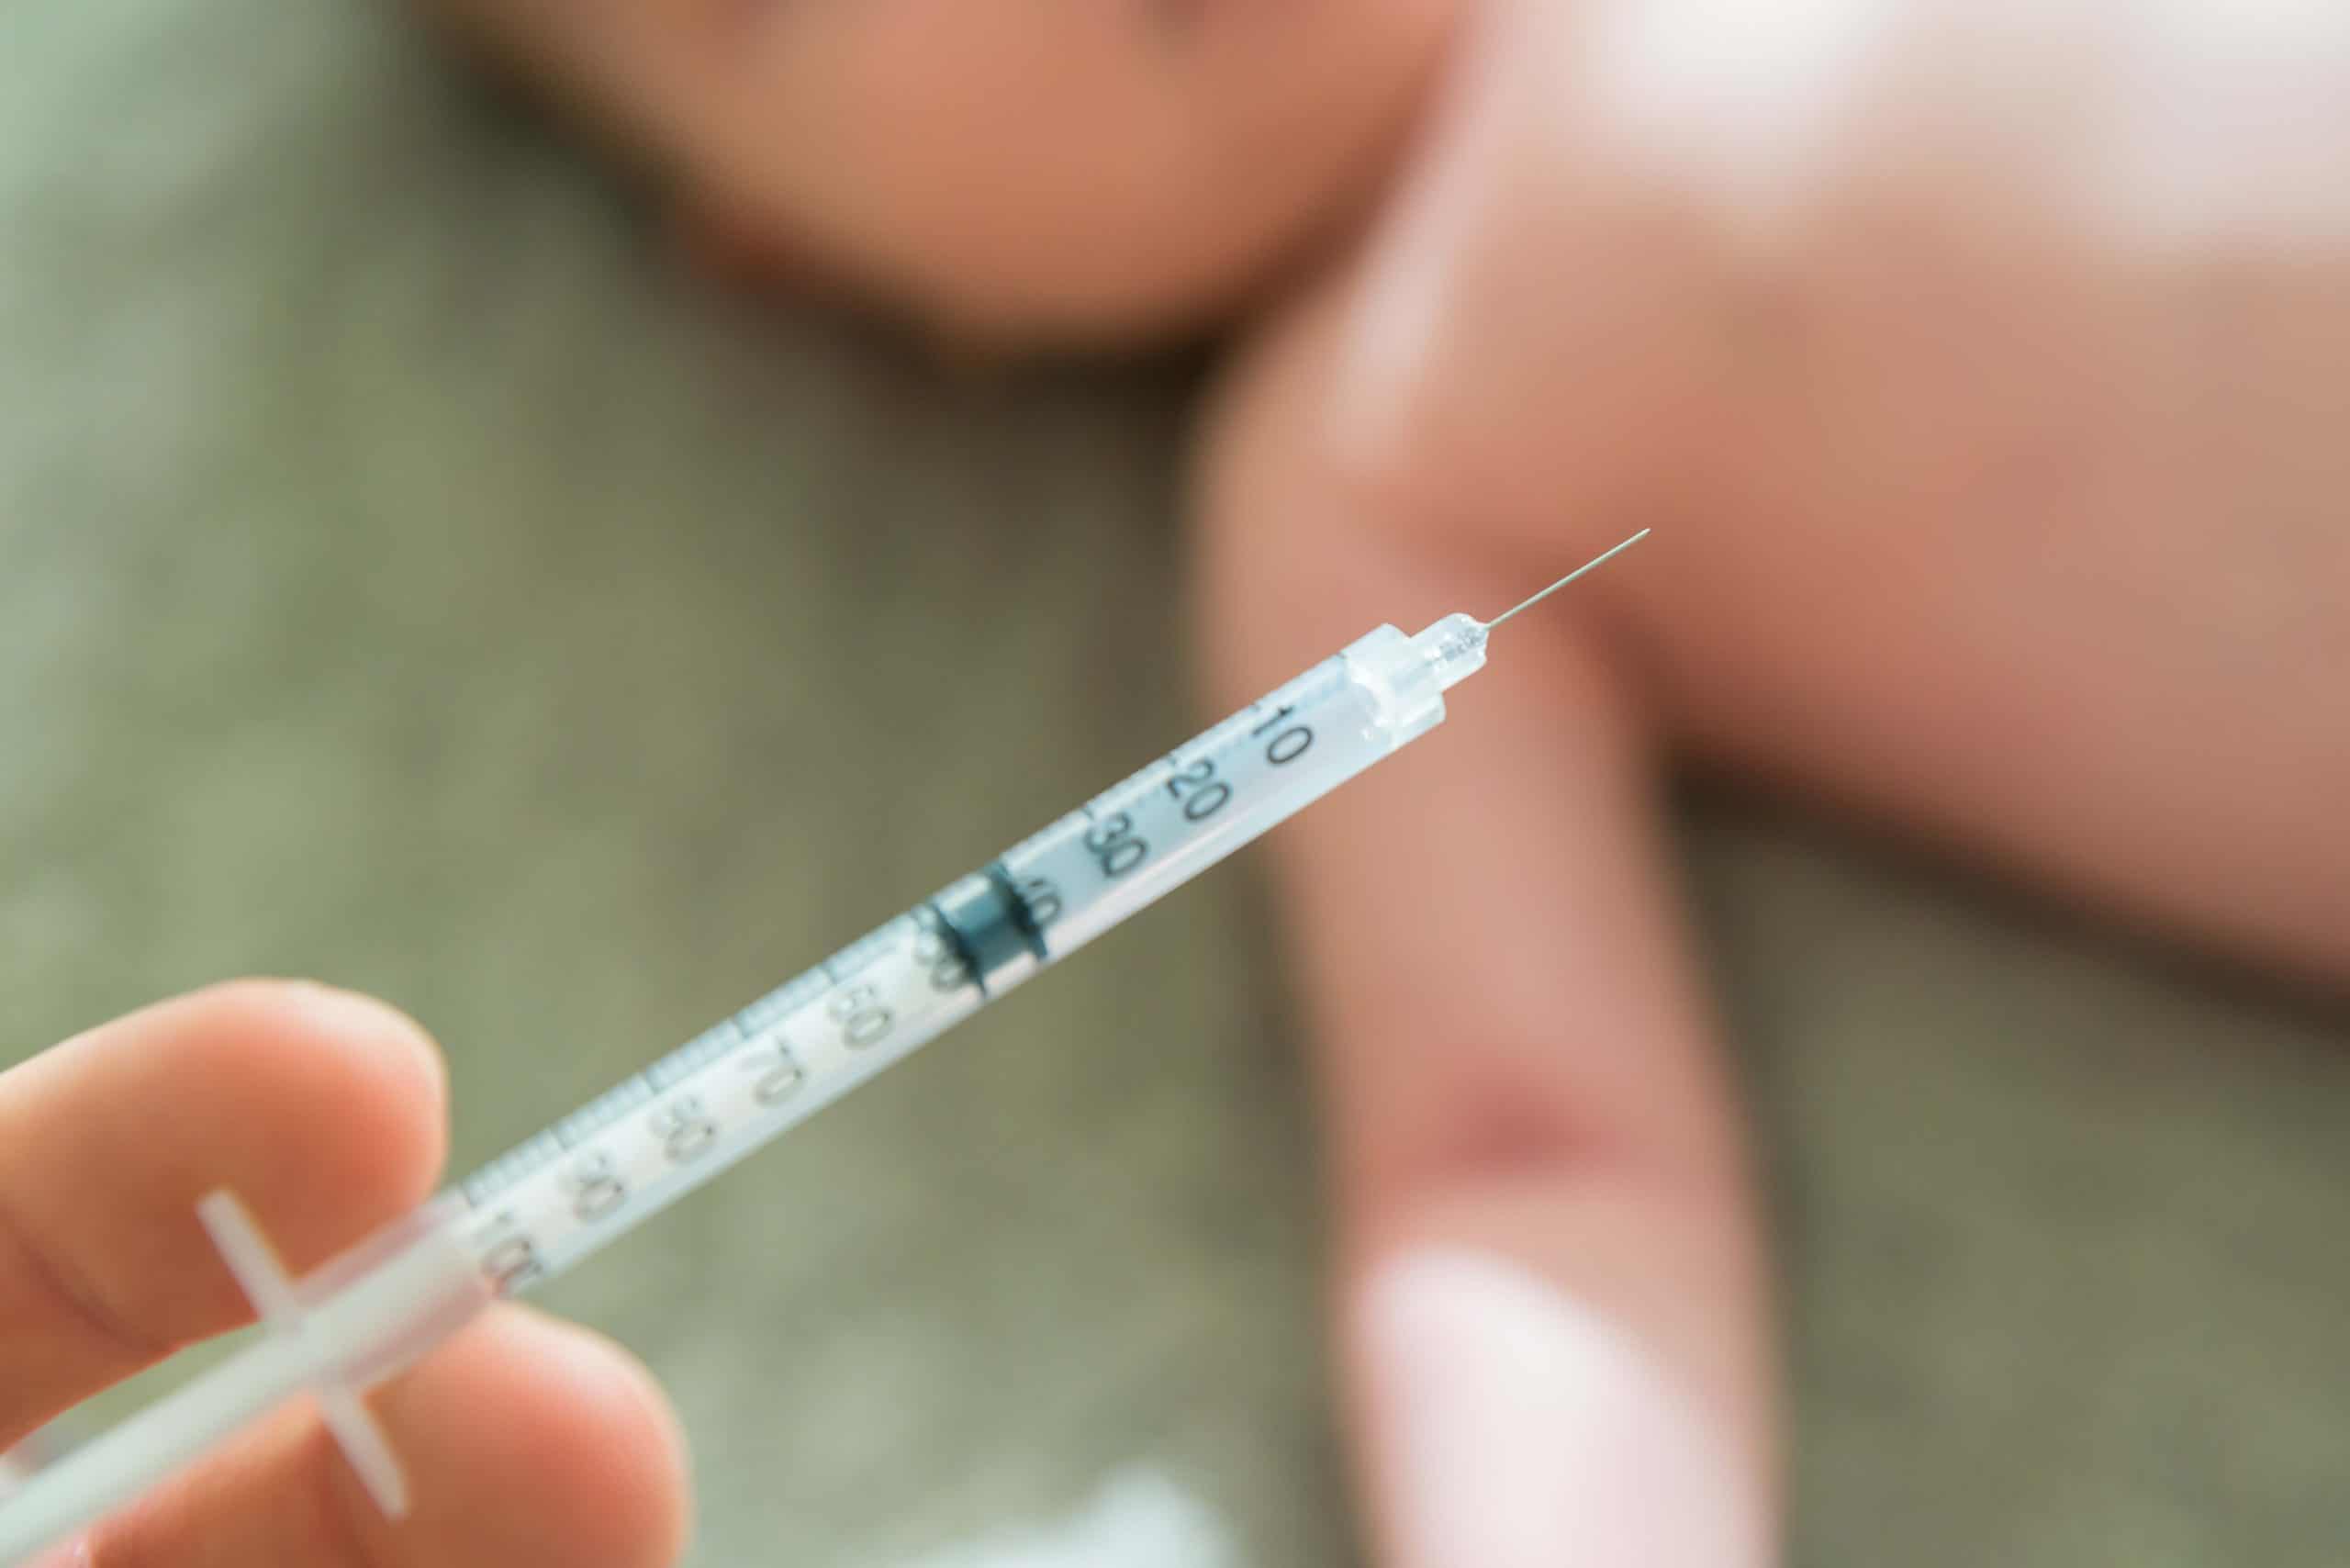 เด็กที่ตรวจพบเชื้อโควิด-19 เป็นบวกควรได้รับวัคซีนพื้นฐานหรือไม่?